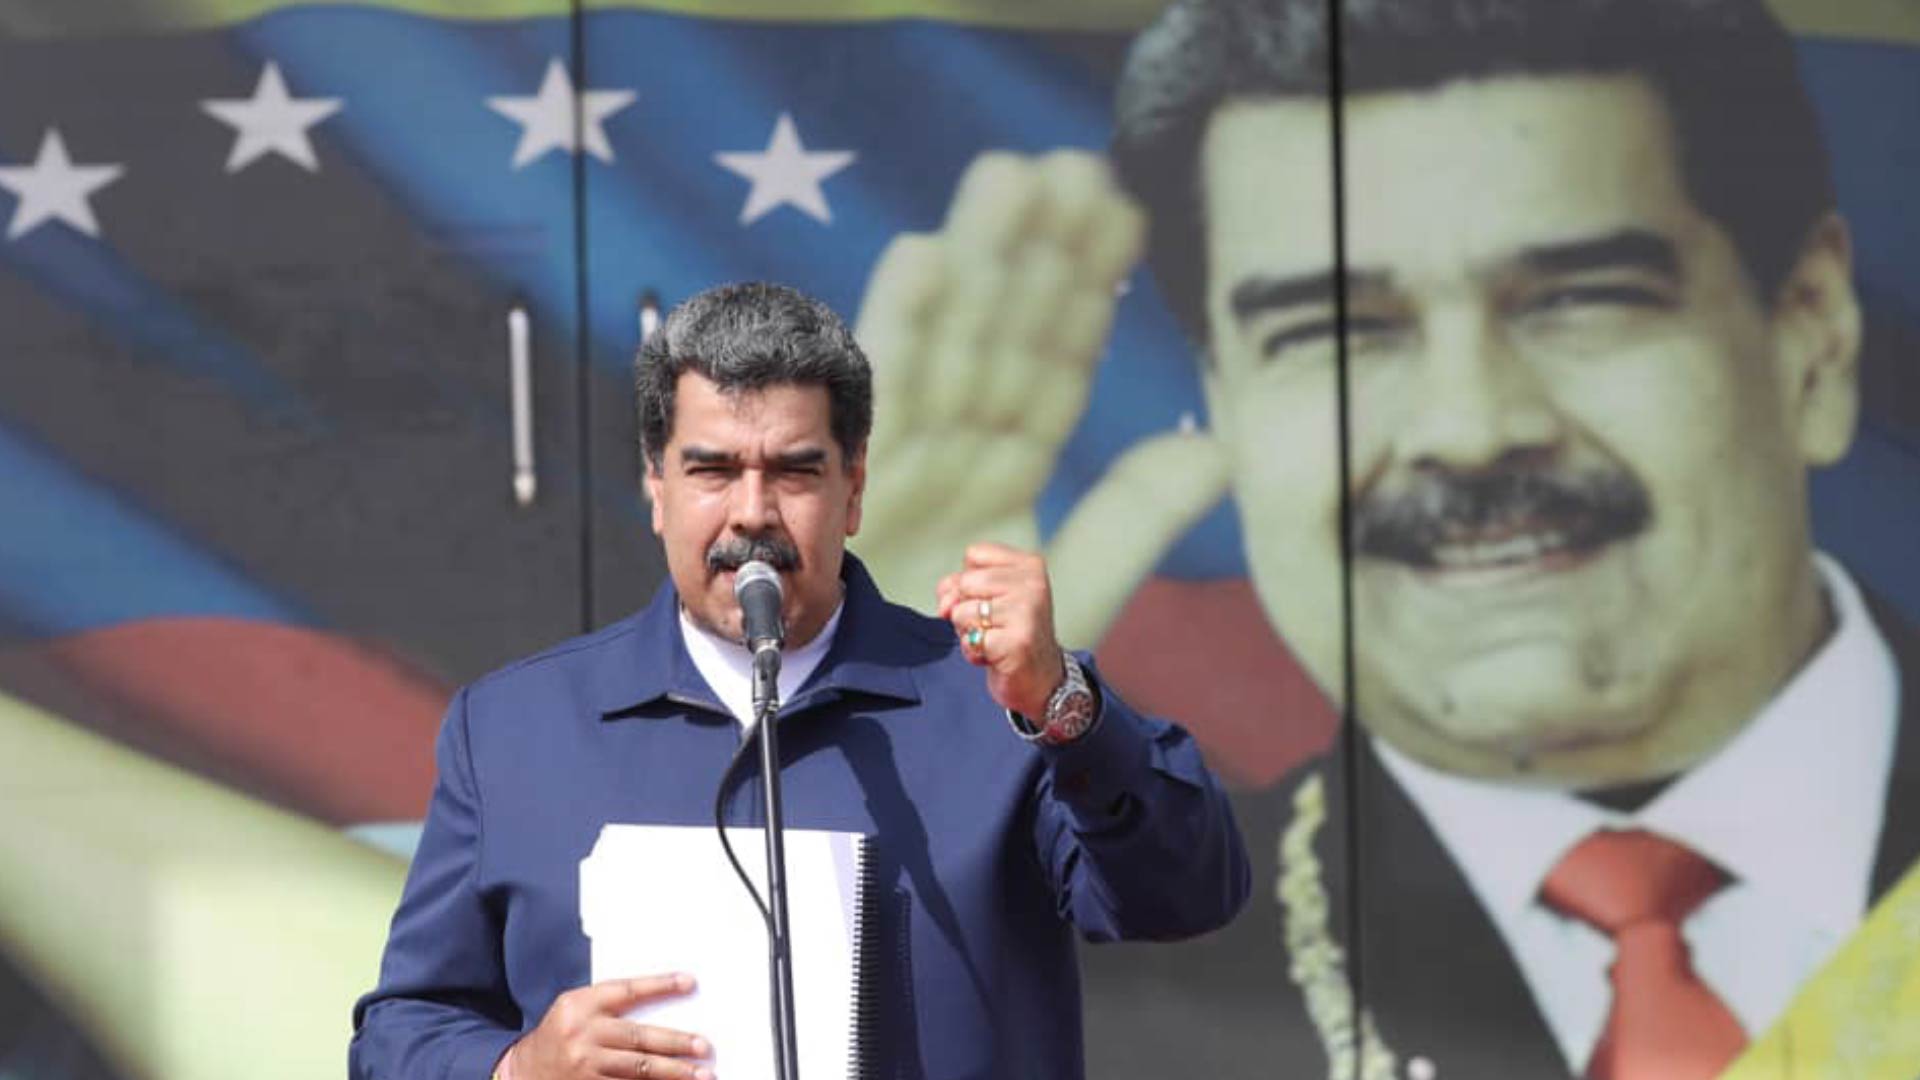 “El rosado nos pone sospechosos”: el último “chiste” de Maduro que exhibe la homofobia de Estado que rige en Venezuela